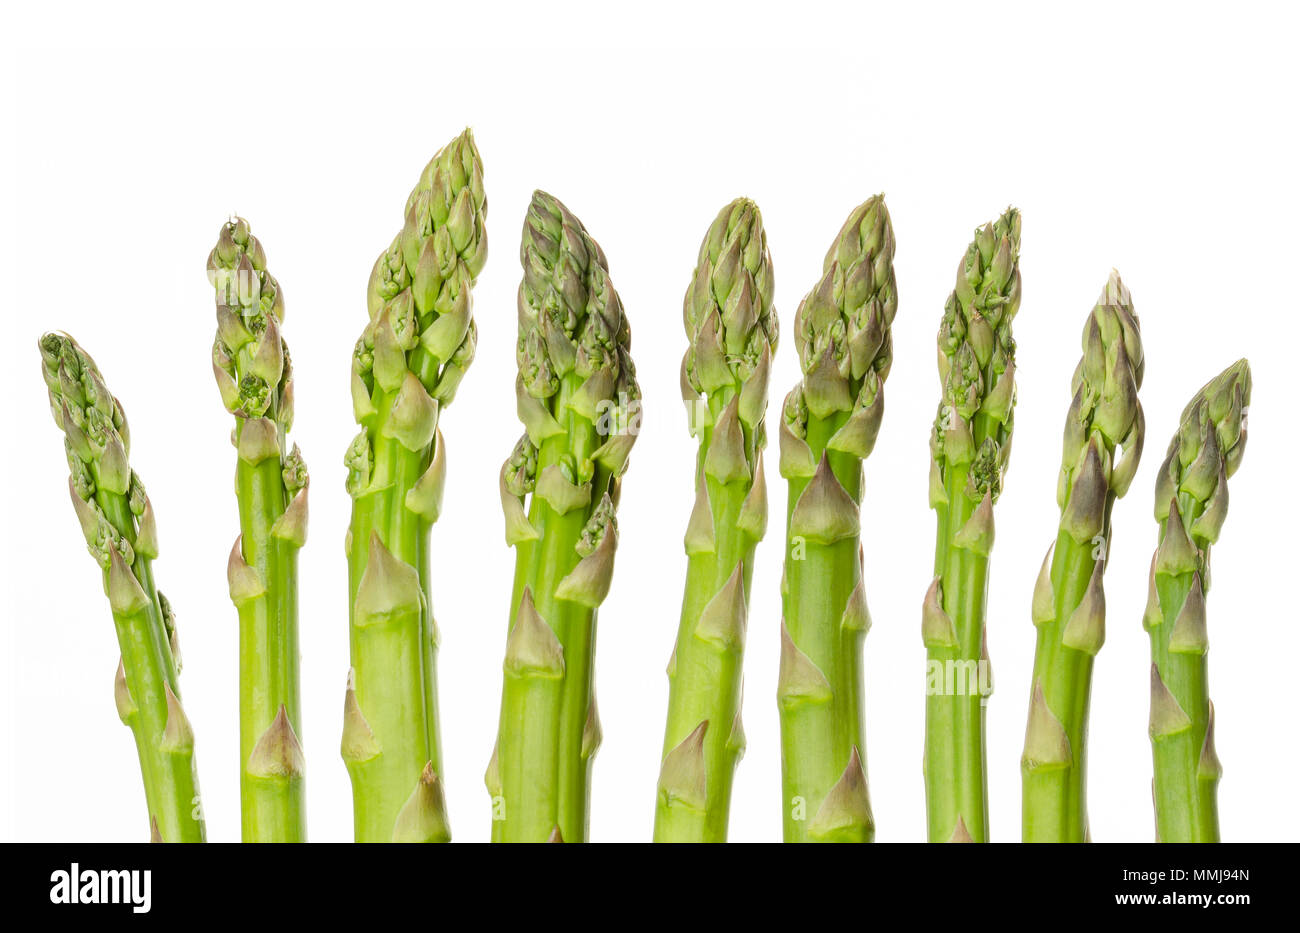 Frische grüne Spargelspitzen in einer Reihe. Sparrow Gras. Kultiviert Asparagus officinalis. Frühling Gemüse mit dicken Stielen und geschlossenen Knospen. Essen Foto. Stockfoto